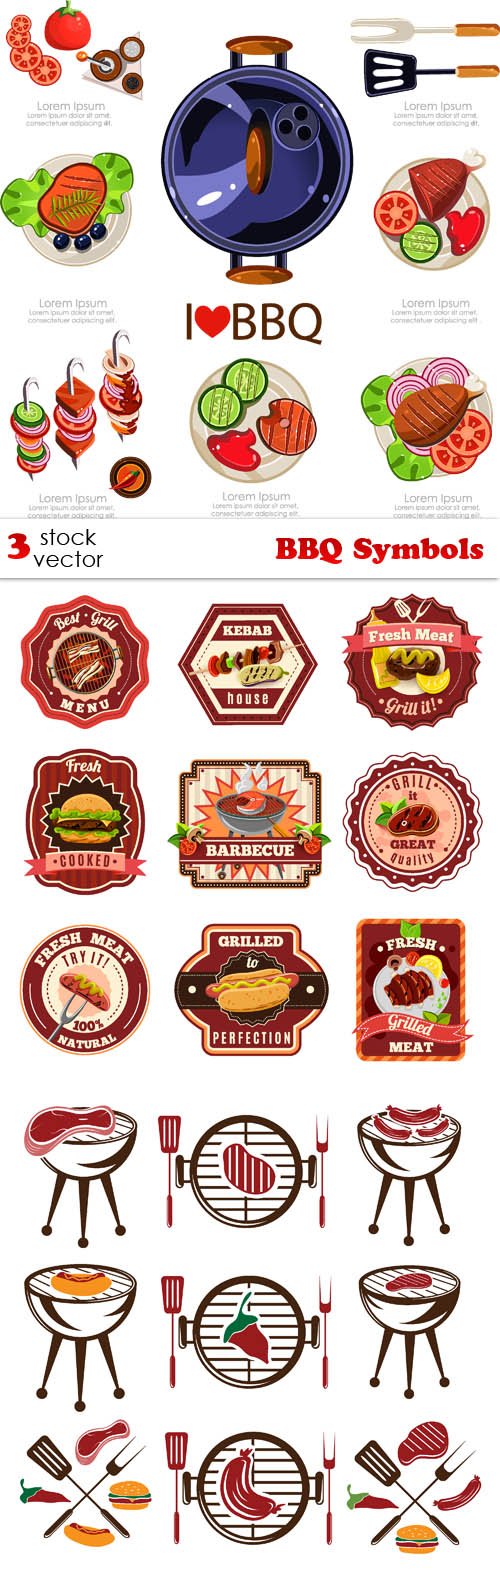 Vectors - BBQ Symbols